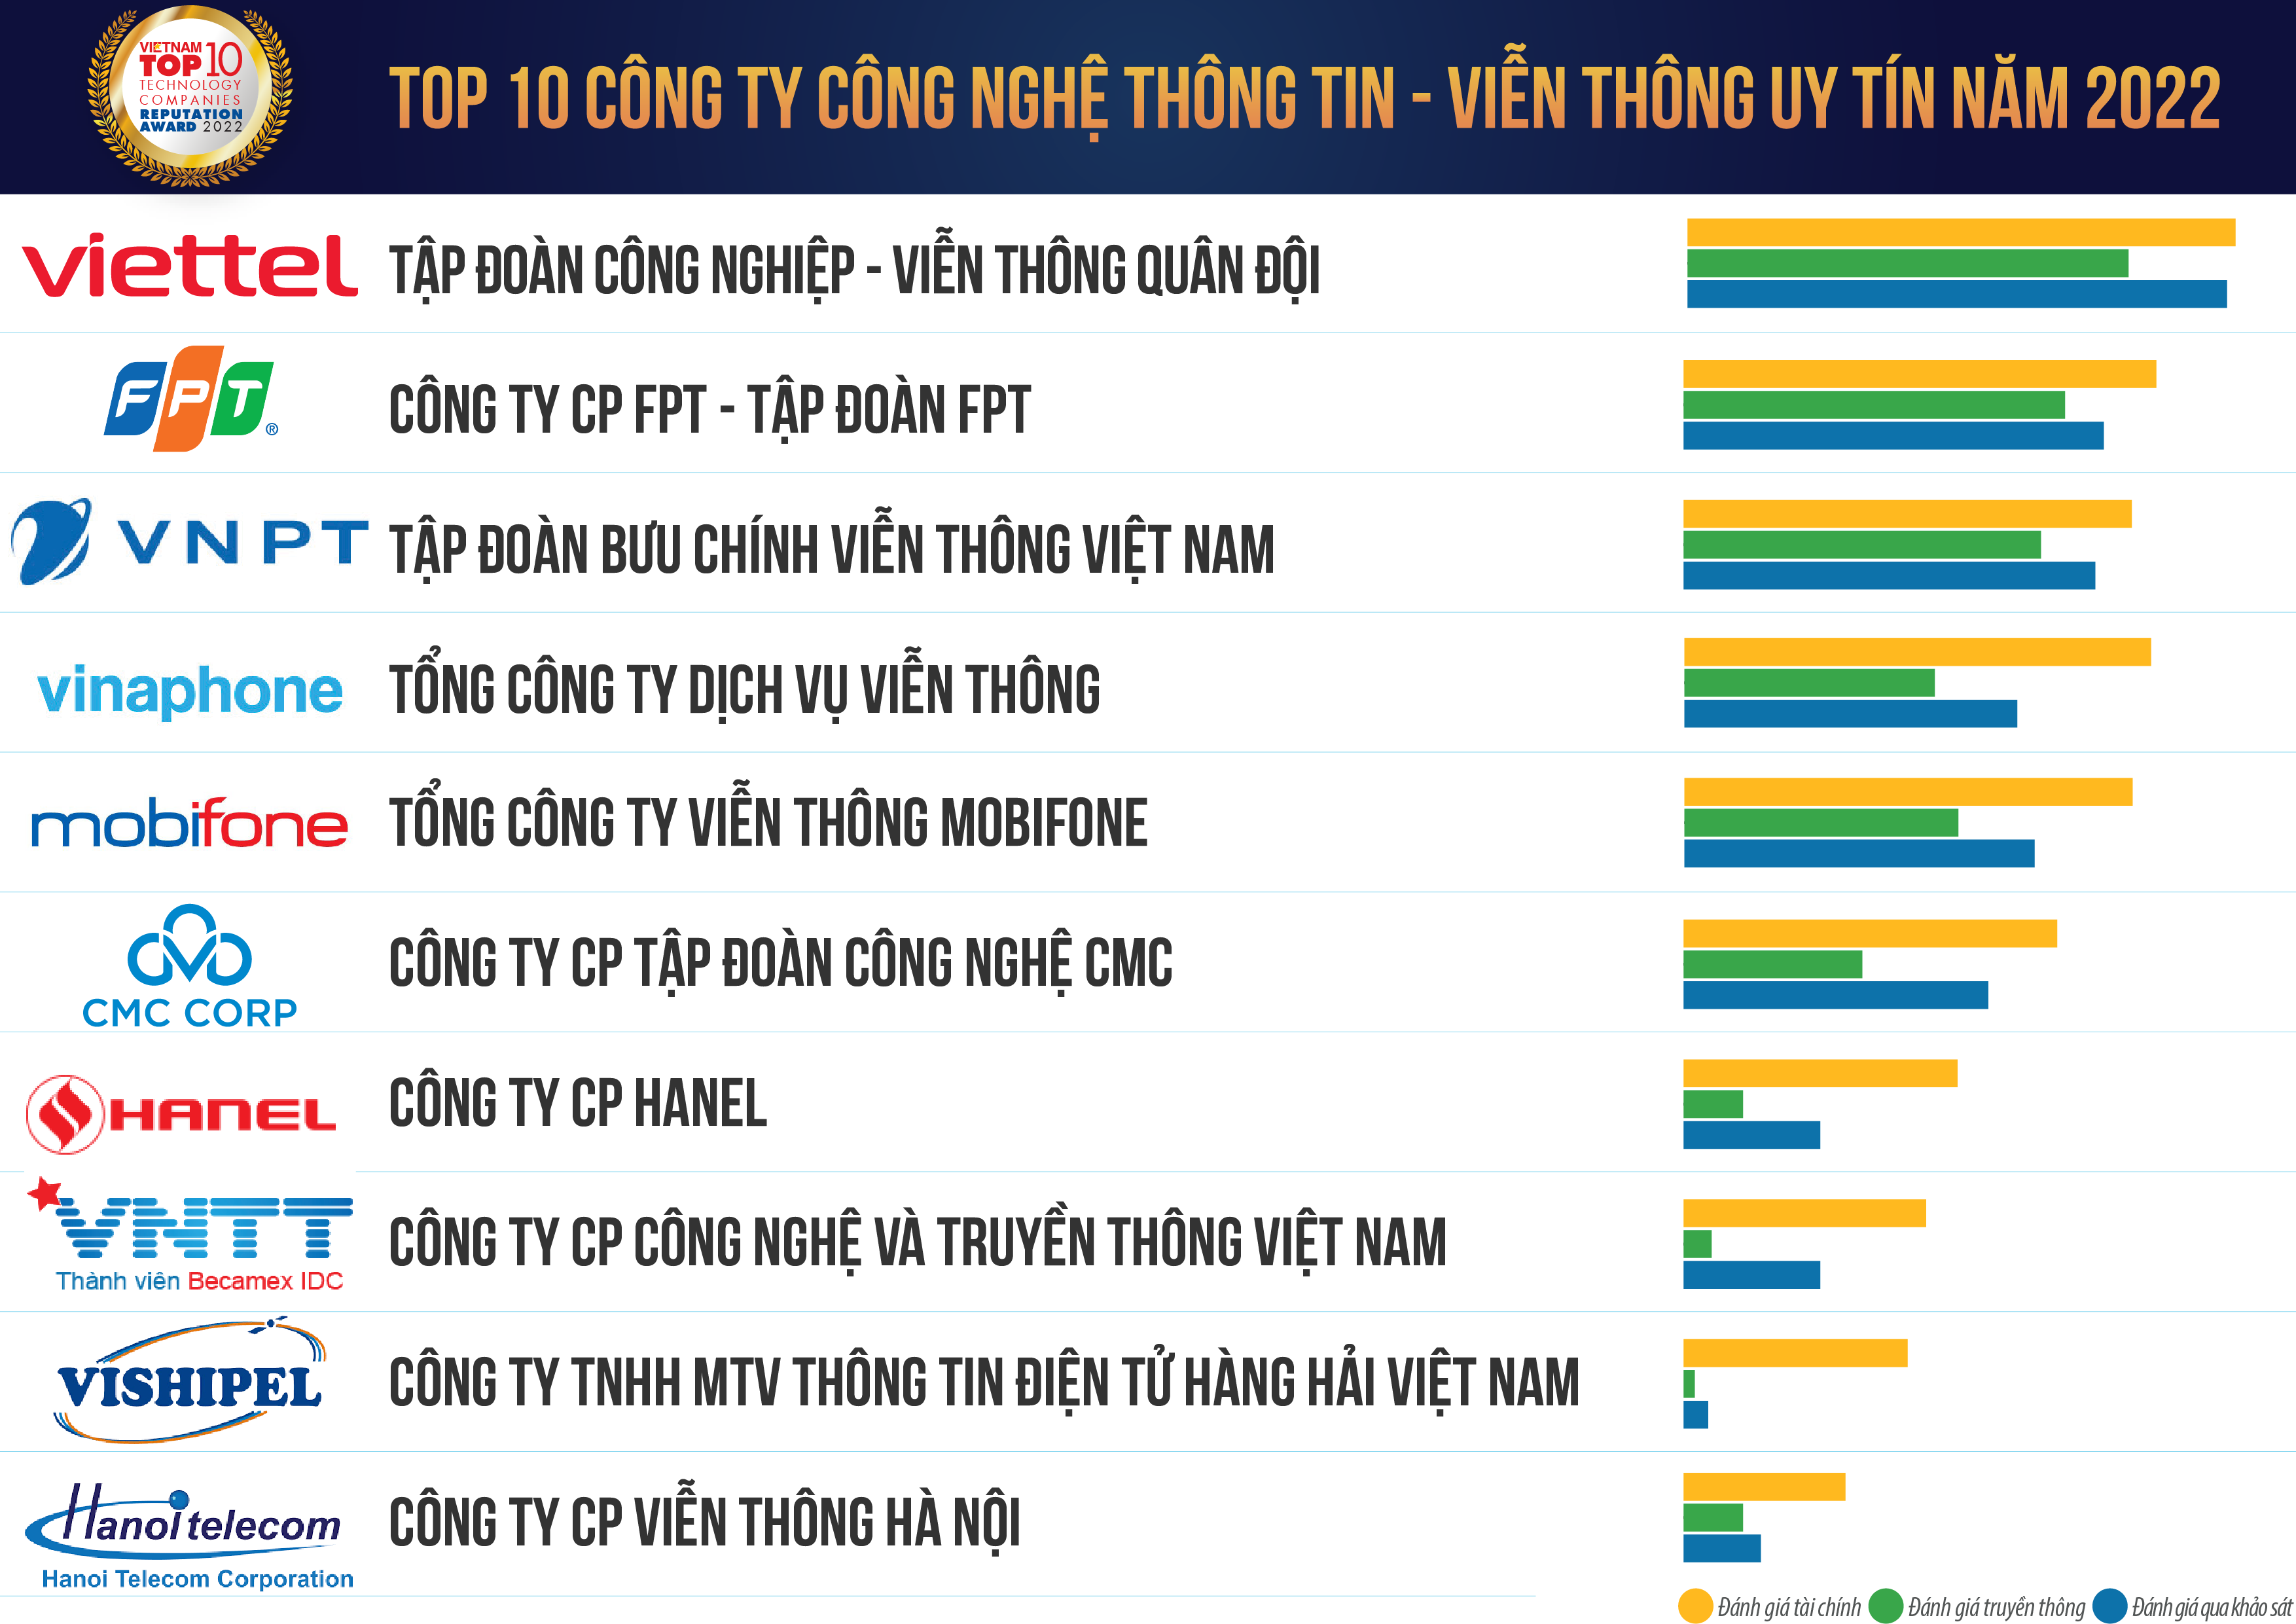 Top 10 Công ty Công nghệ Uy tín năm 2022
                 – Vietnam Report